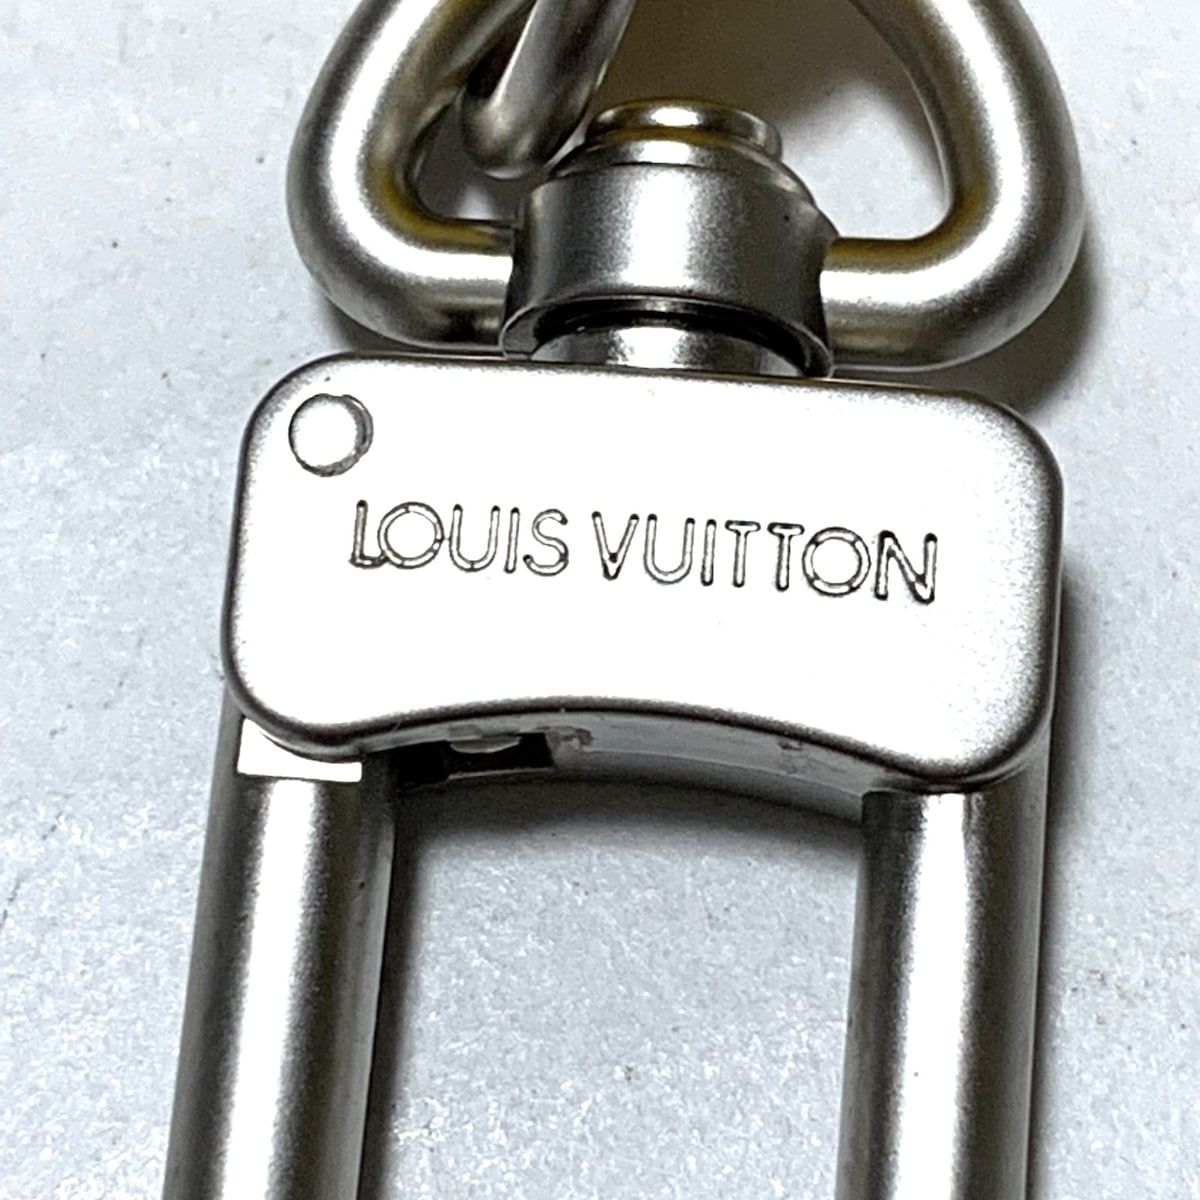 LOUIS VUITTON(ルイヴィトン) キーホルダー(チャーム) ルイヴィトンカップ ポルトクレブエ イエロー×シルバー ラバー×金属素材